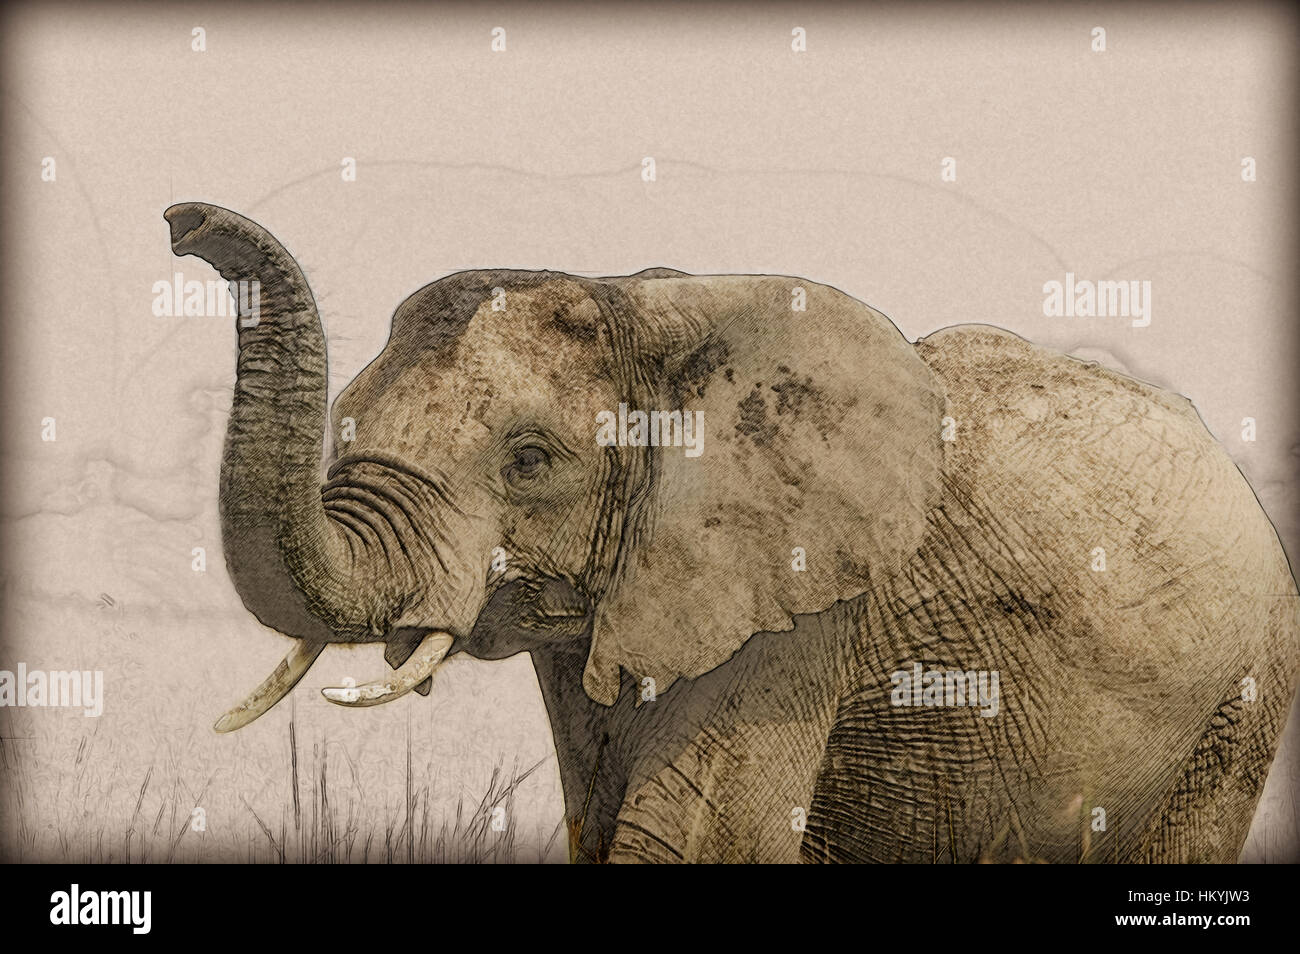 Digital Bild einer engen erweitert sich eines afrikanischen Elefanten mit erhöhten erhöhten Stamm. Fotografiert in Kenia, Masai Mara reserve Stockfoto